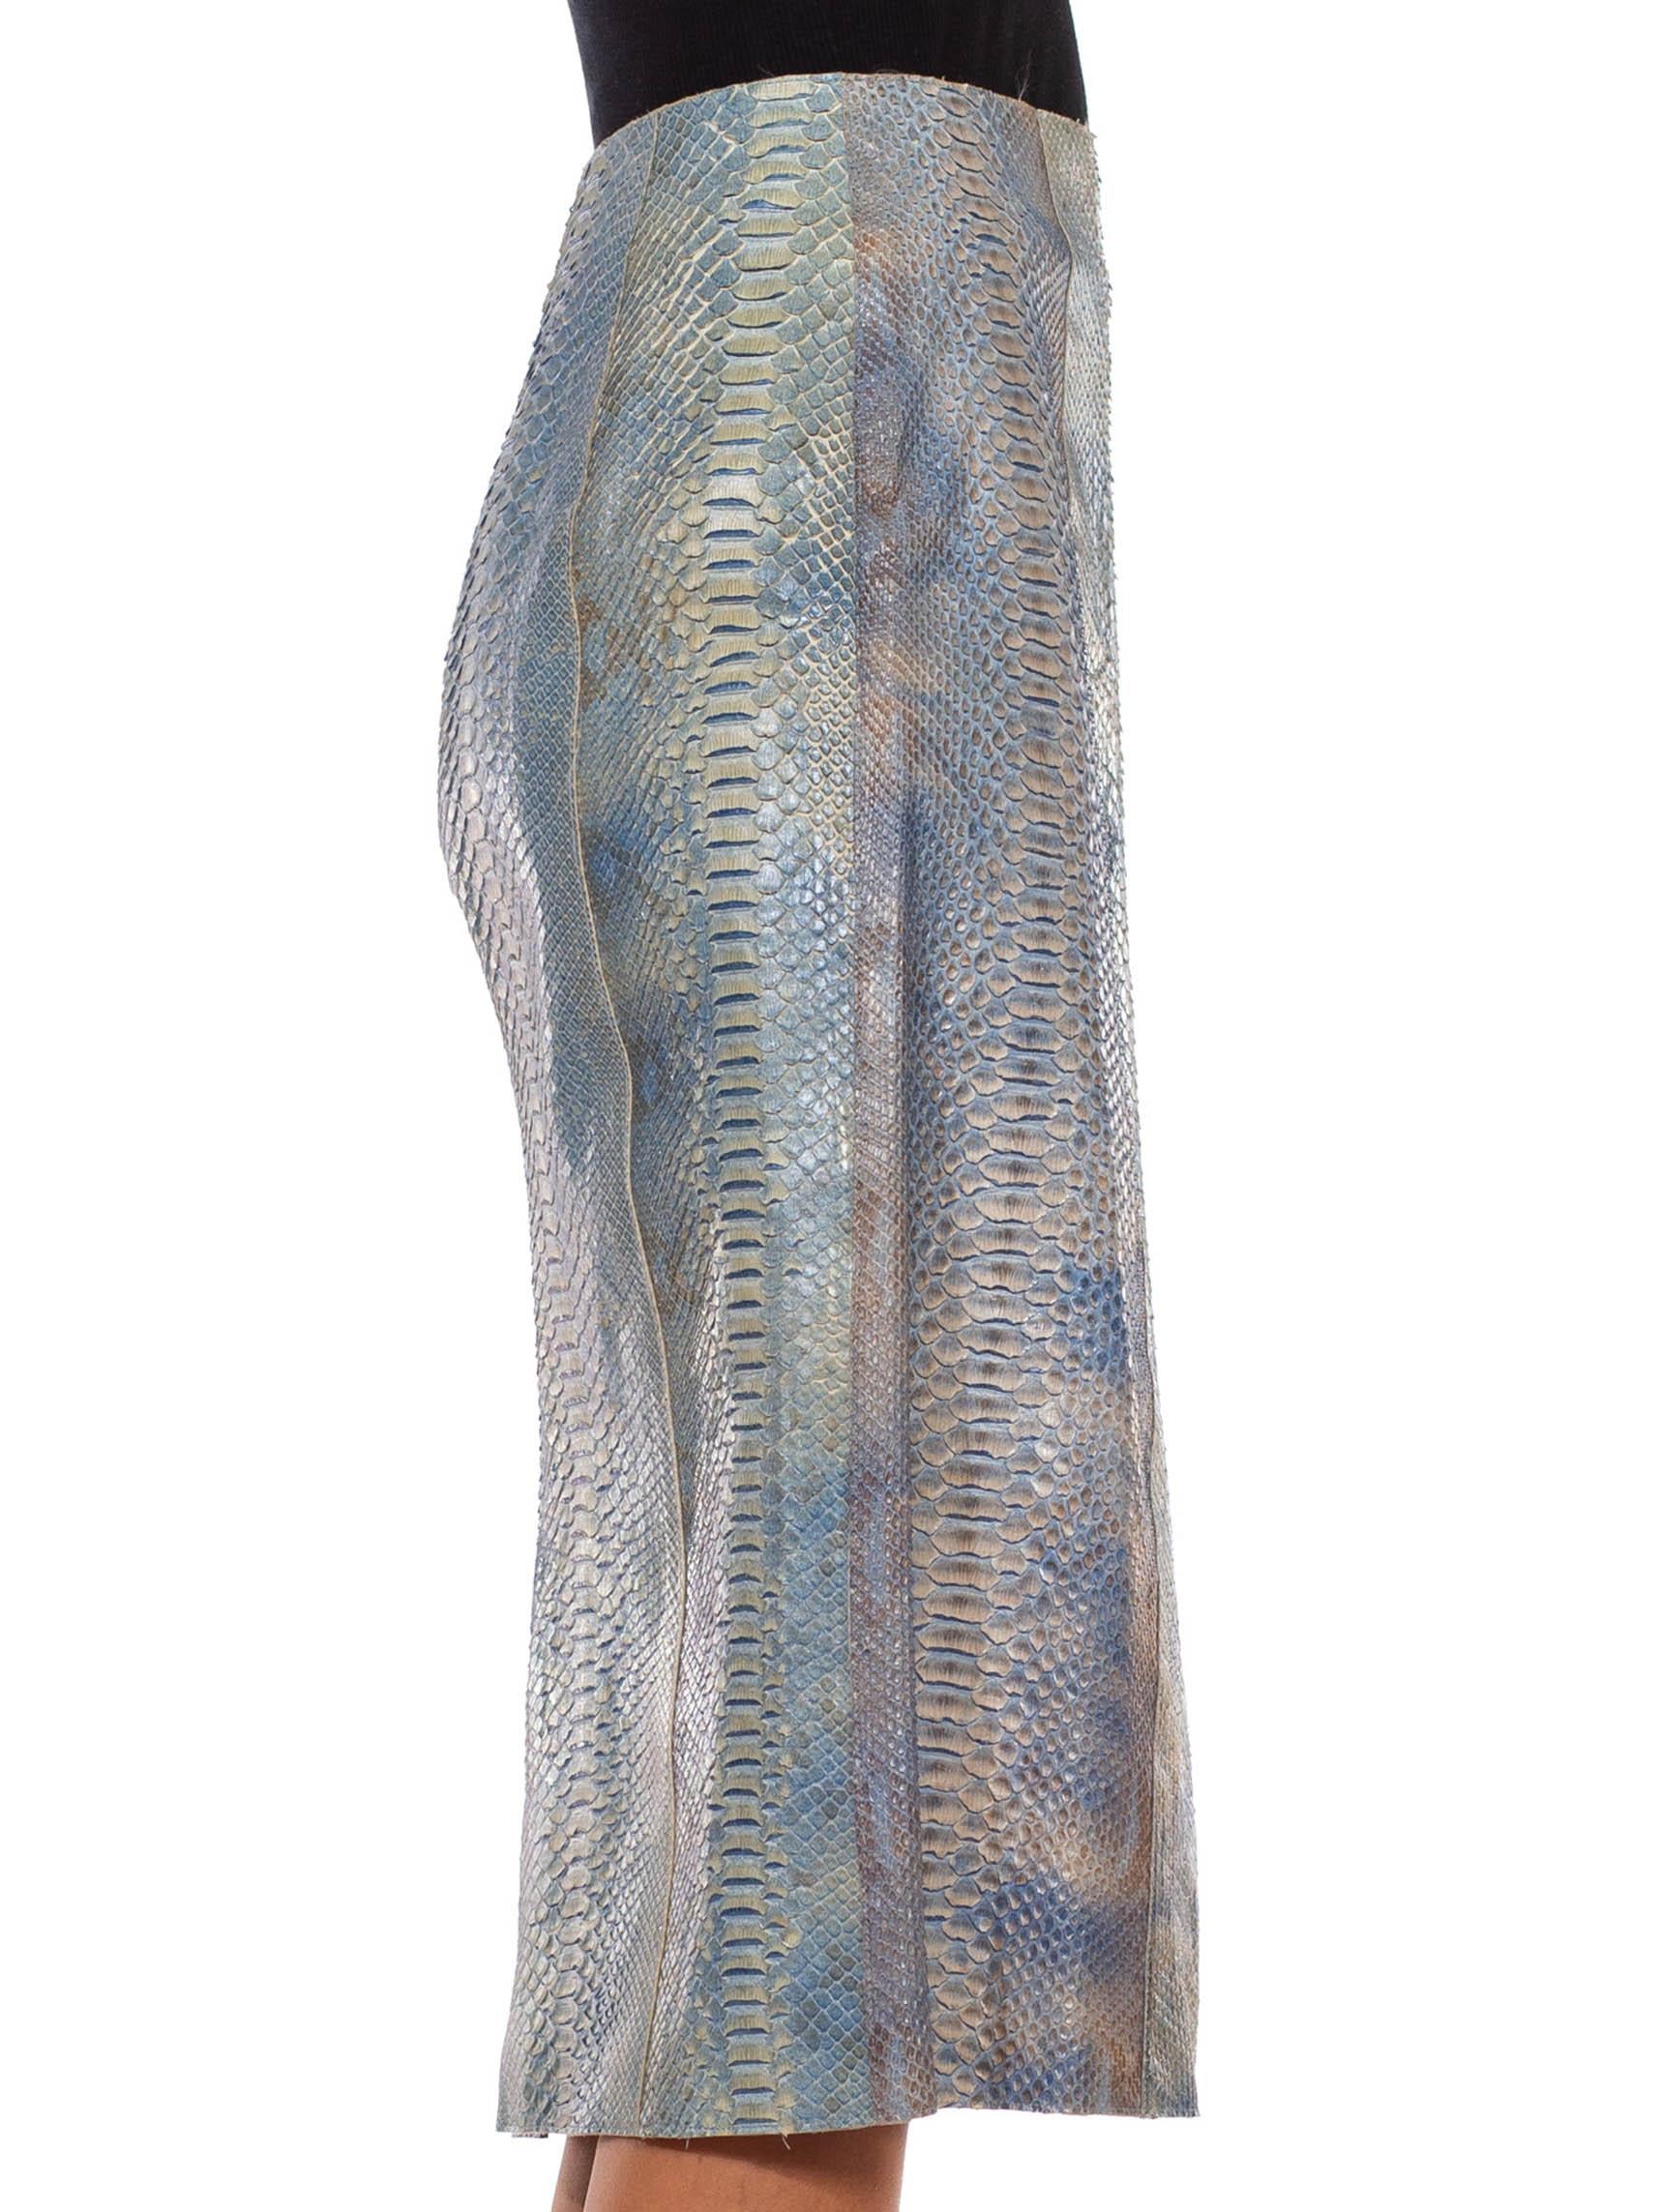 Jupe fourreau en peau de serpent bleu clair teintée à la main 1990S CALVIN KLEIN